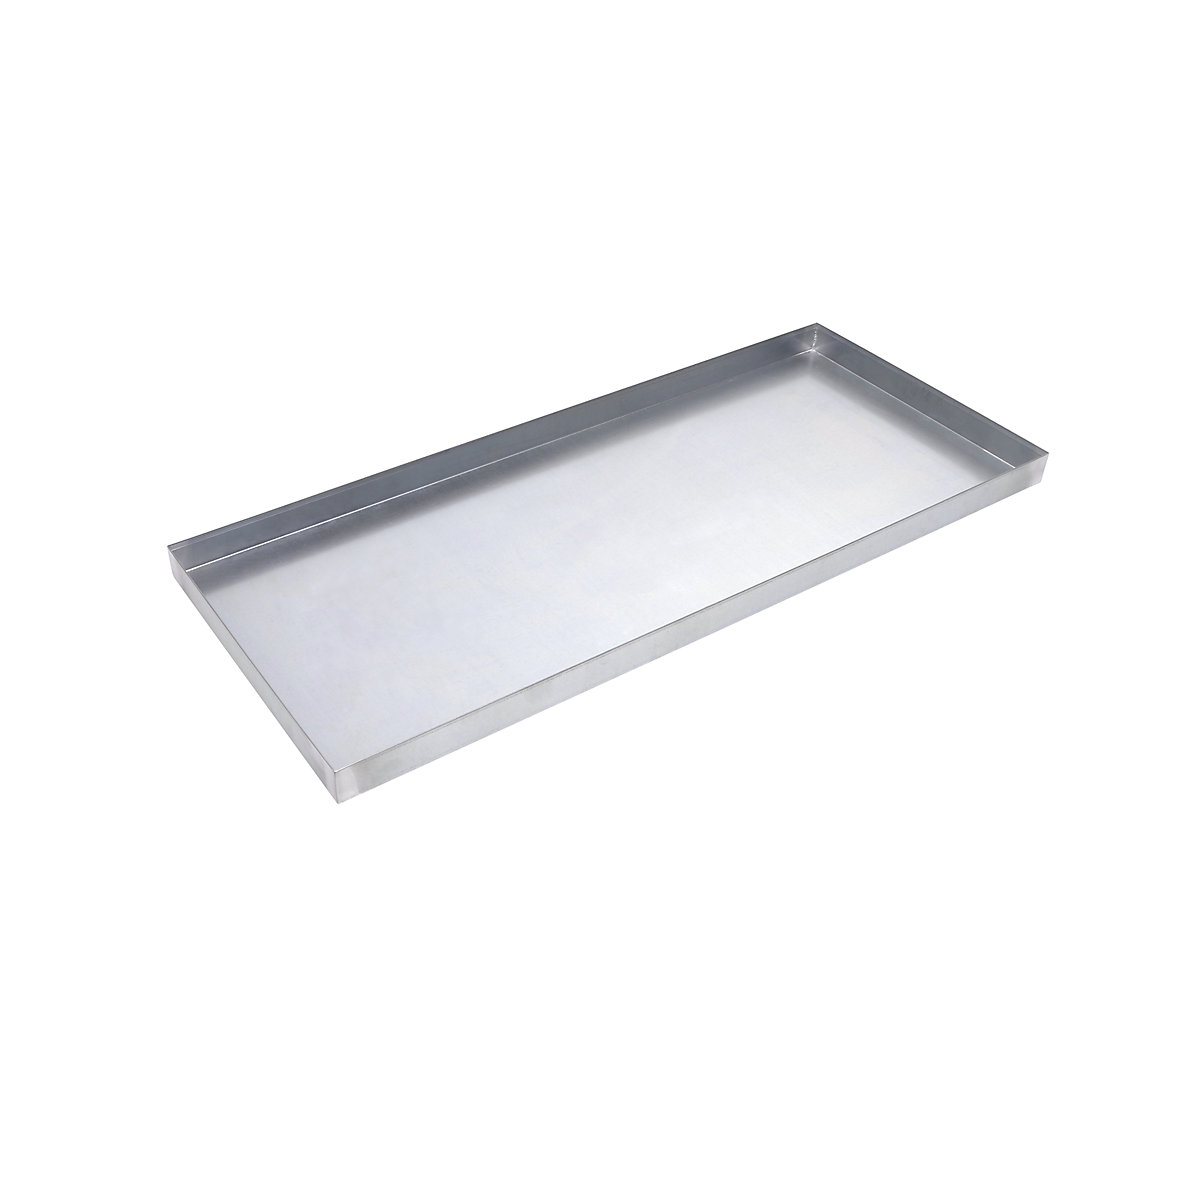 Tray shelf – eurokraft pro, zinc plated, for cupboard WxD 1200 x 500 mm